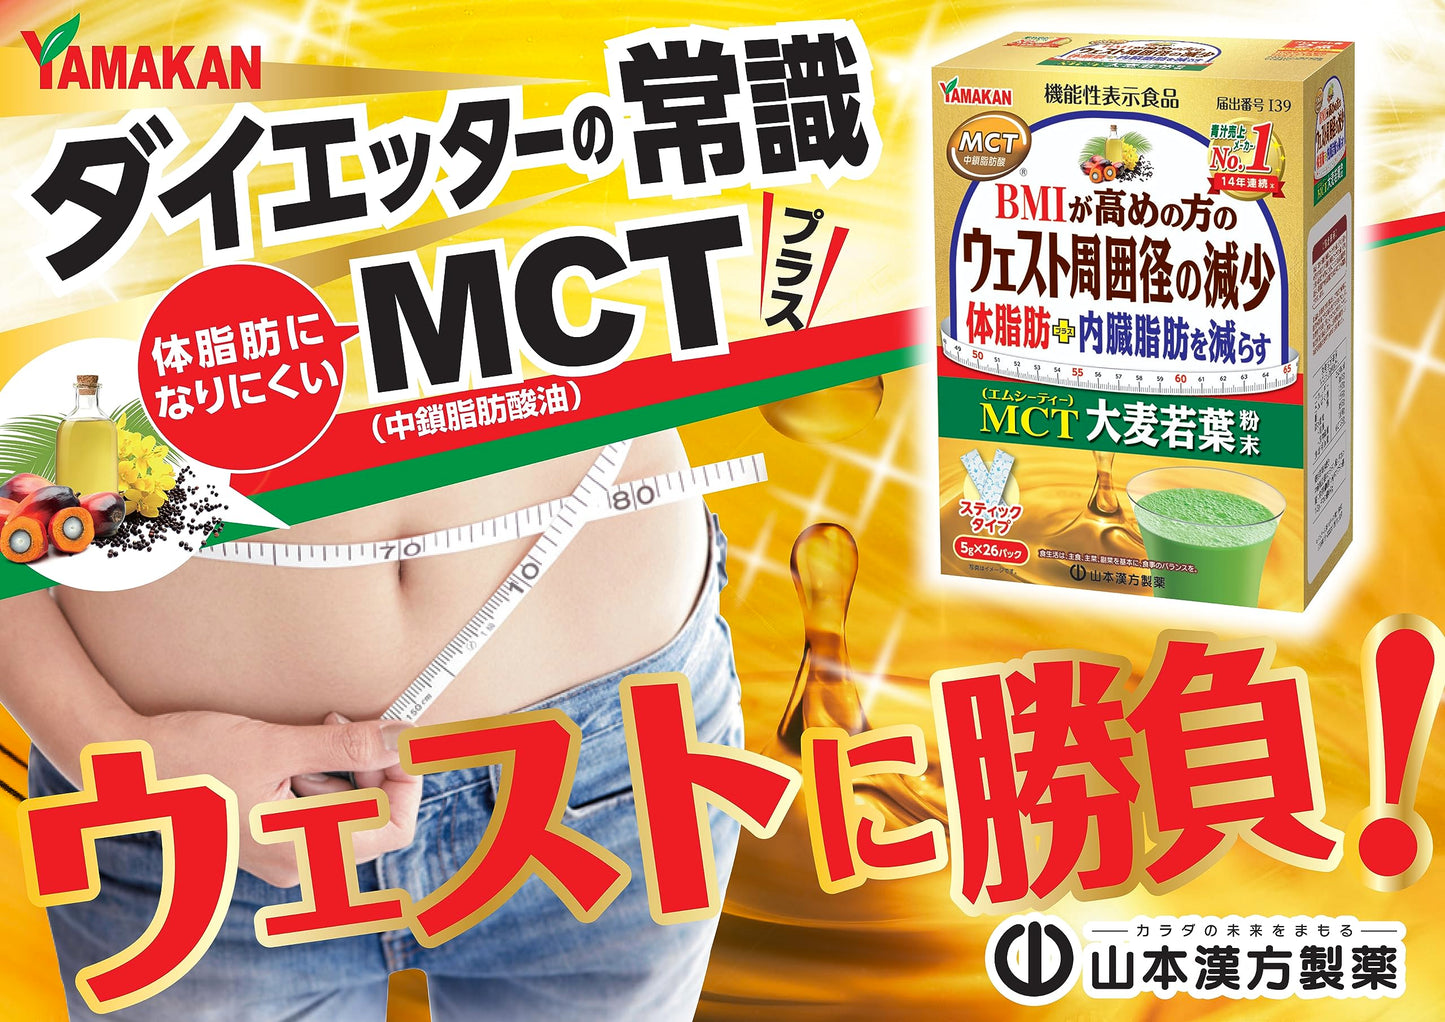 [功能聲稱食品] 山本漢方製藥 MCT 大麥草粉 5g x 26 包